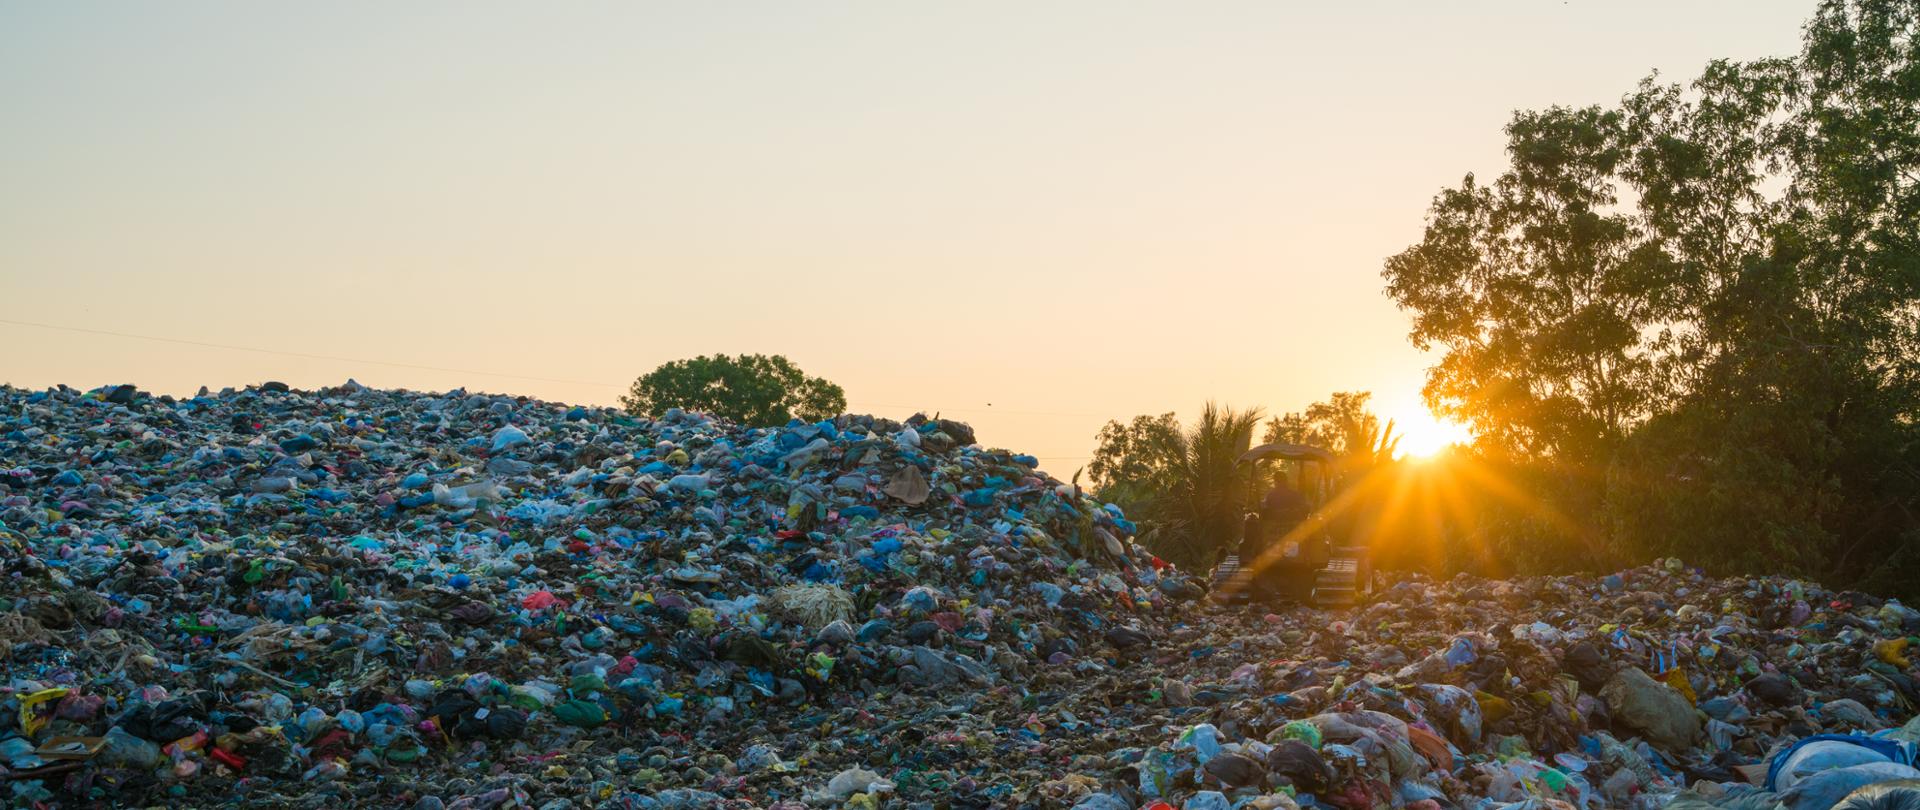 Garbage pile in trash dump - landfill